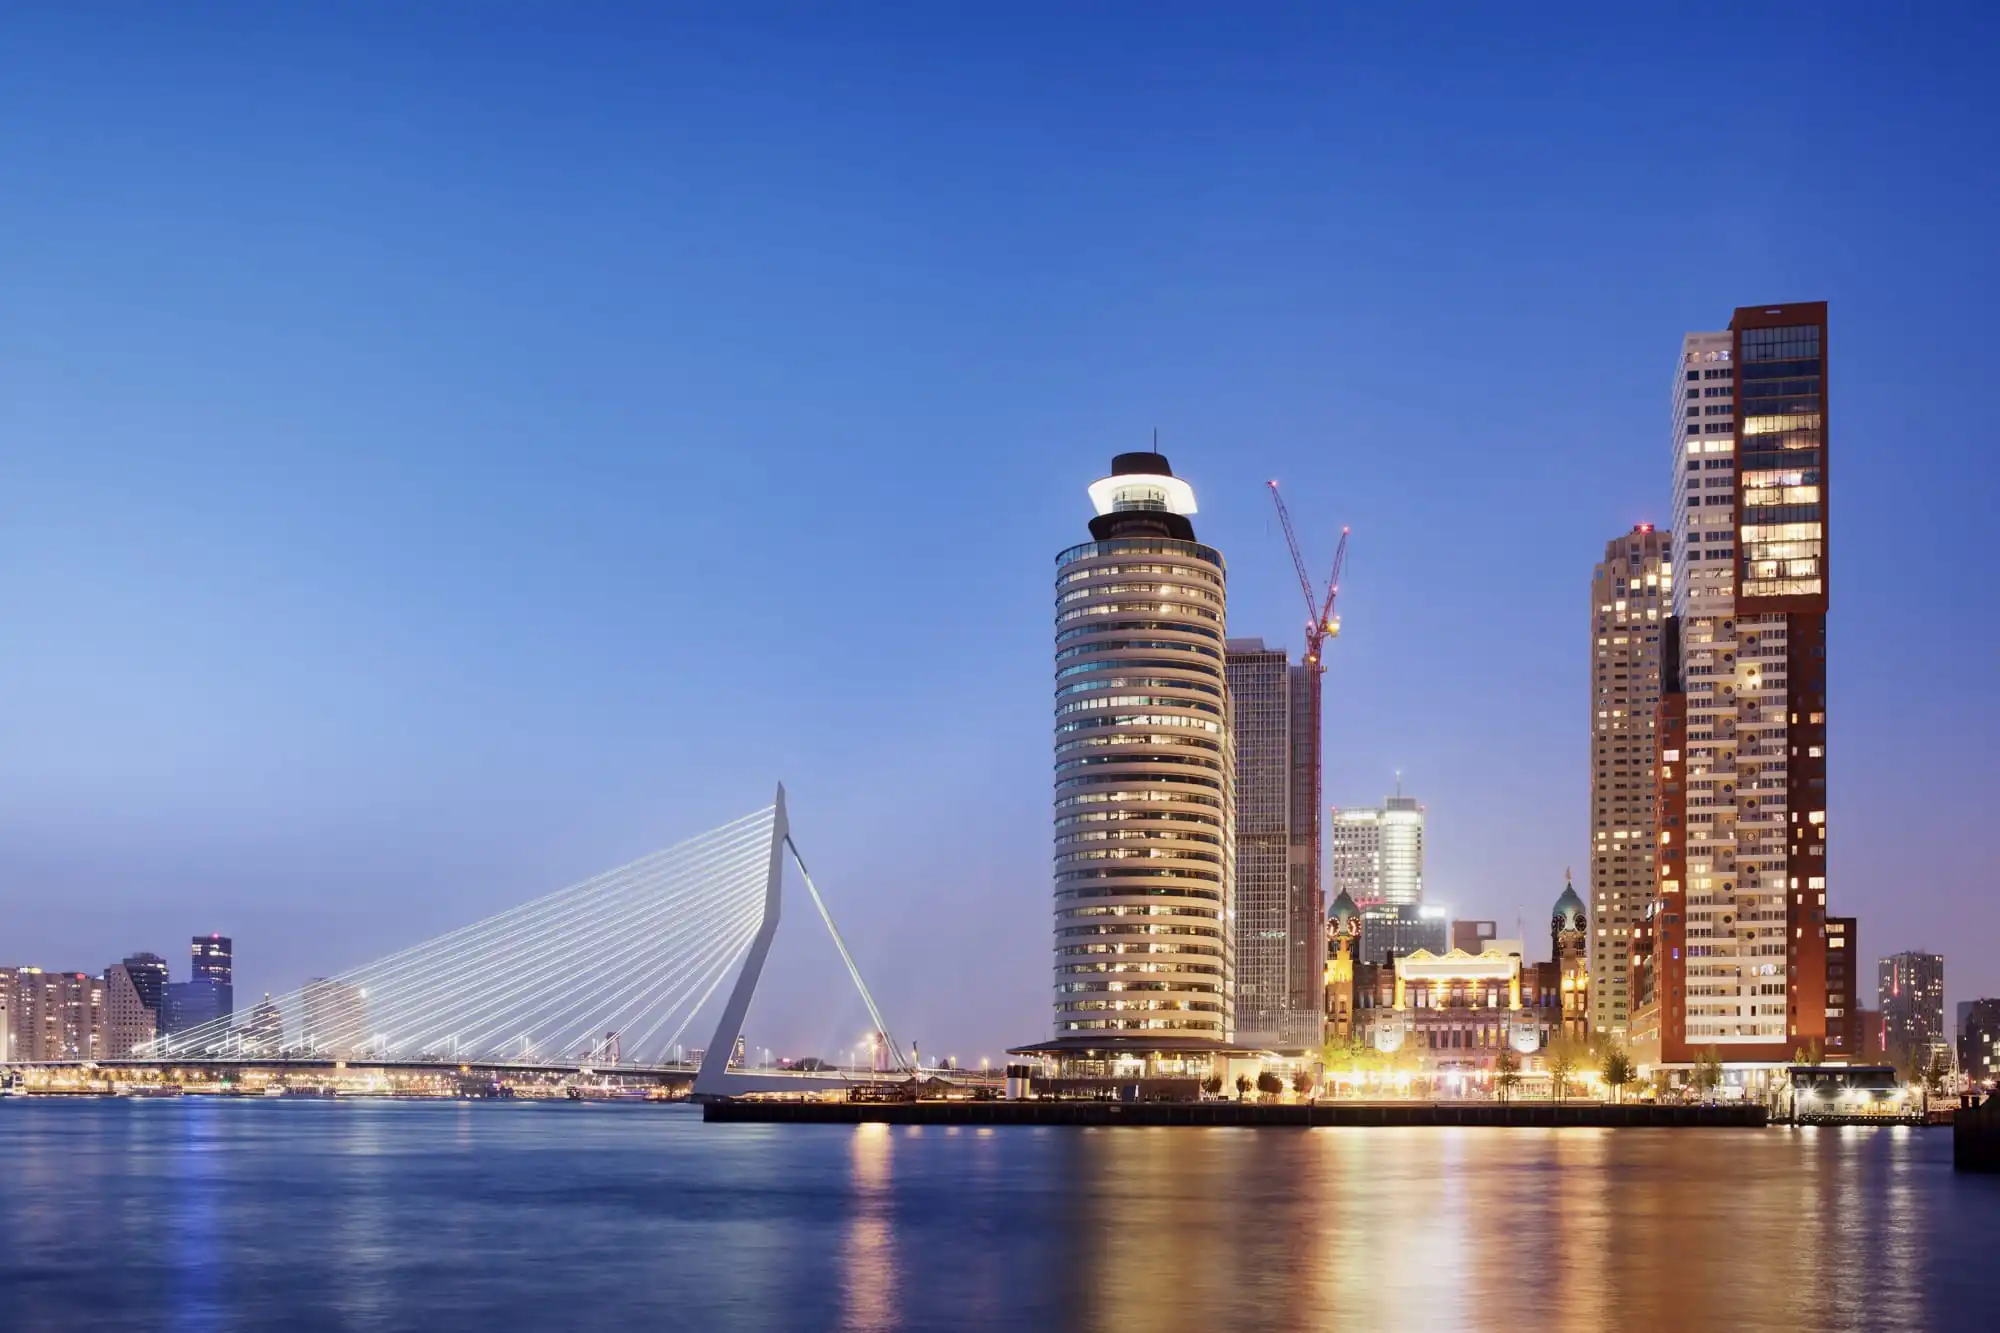 Städtetrips Europa Destinationen: Rotterdam - Skyline bei Nacht